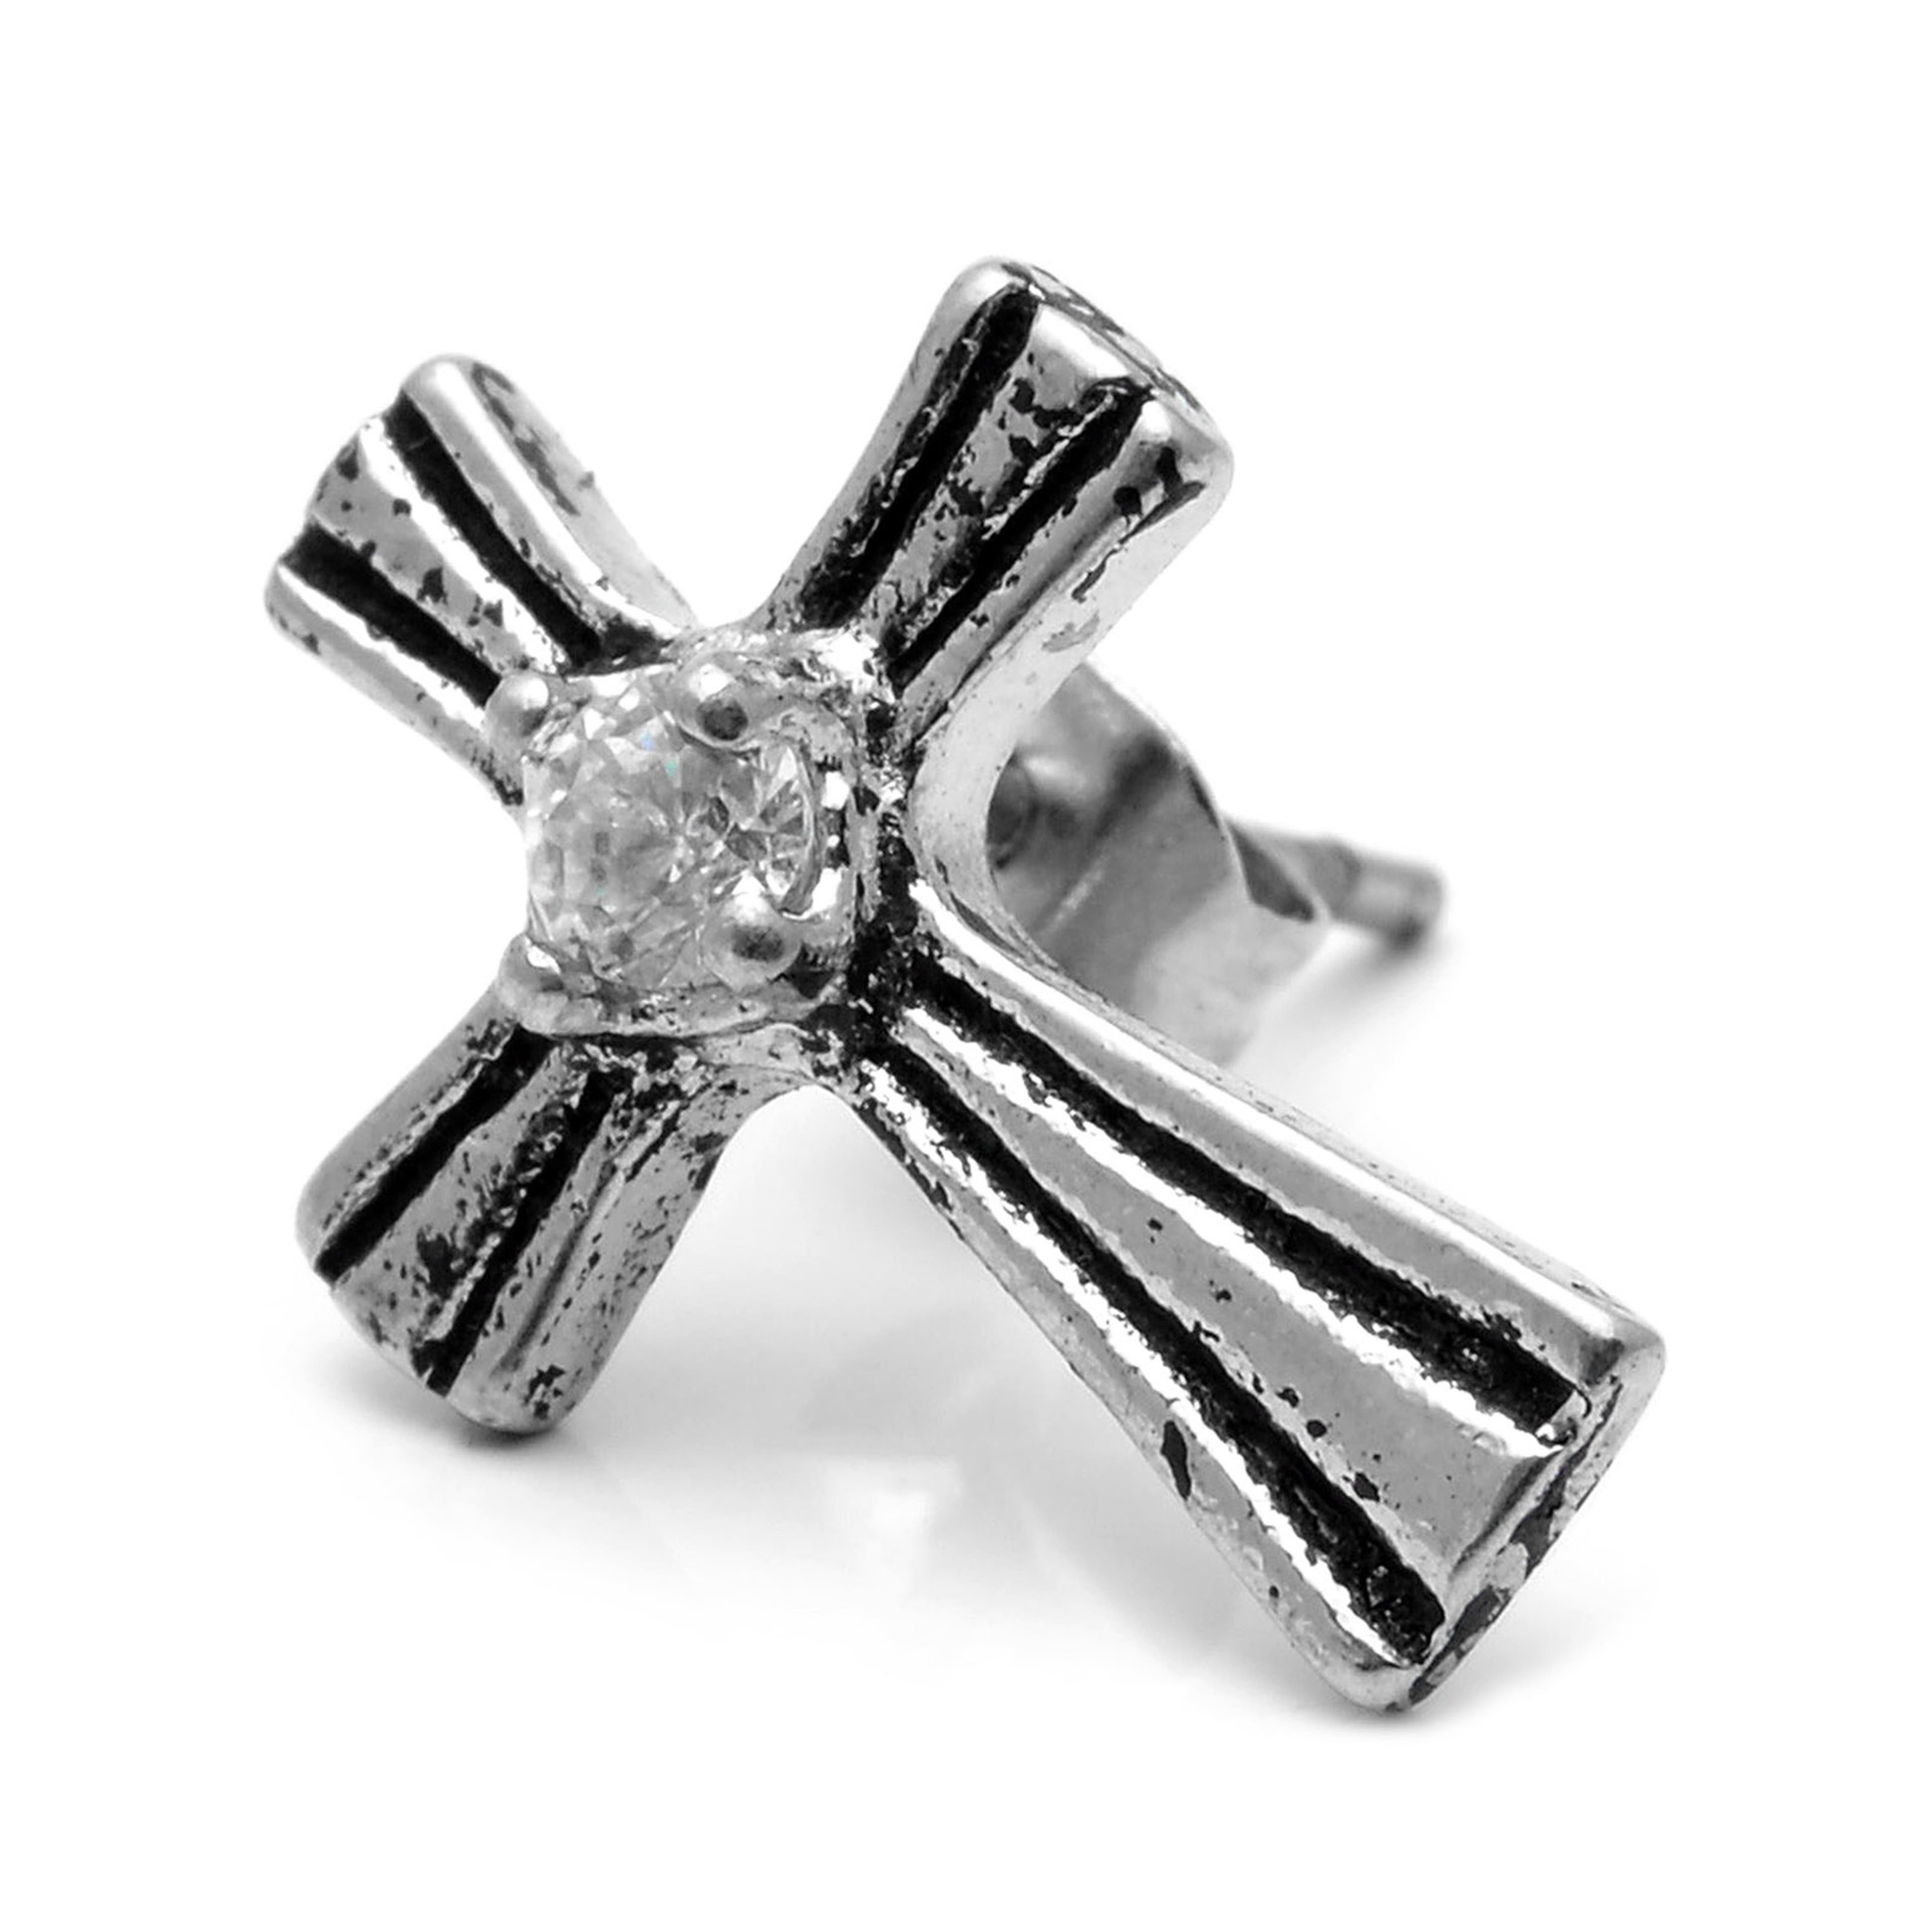 Sentio | Cercel argintiu cu șurub din oțel inoxidabil cu cruce regală și zirconiu